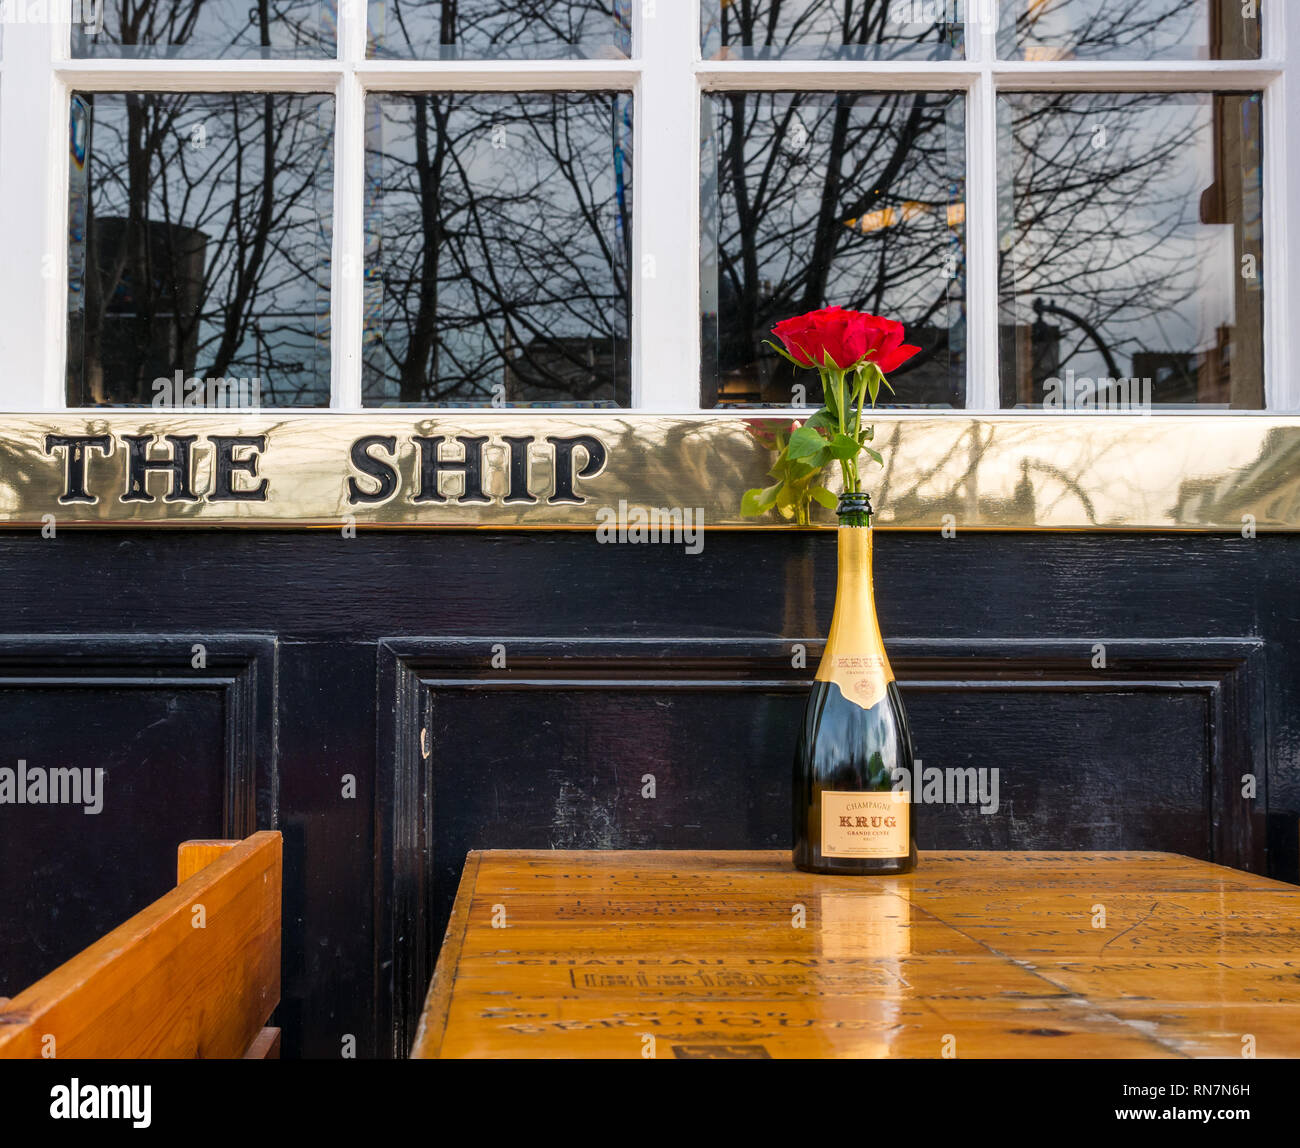 Bouteille de champagne Krug avec rose rouge sur l'extérieur de la table de la chaussée, d'un navire sur le rivage restaurant avec nom de laiton, Leith, Edinburgh, Ecosse, Royaume-Uni Banque D'Images